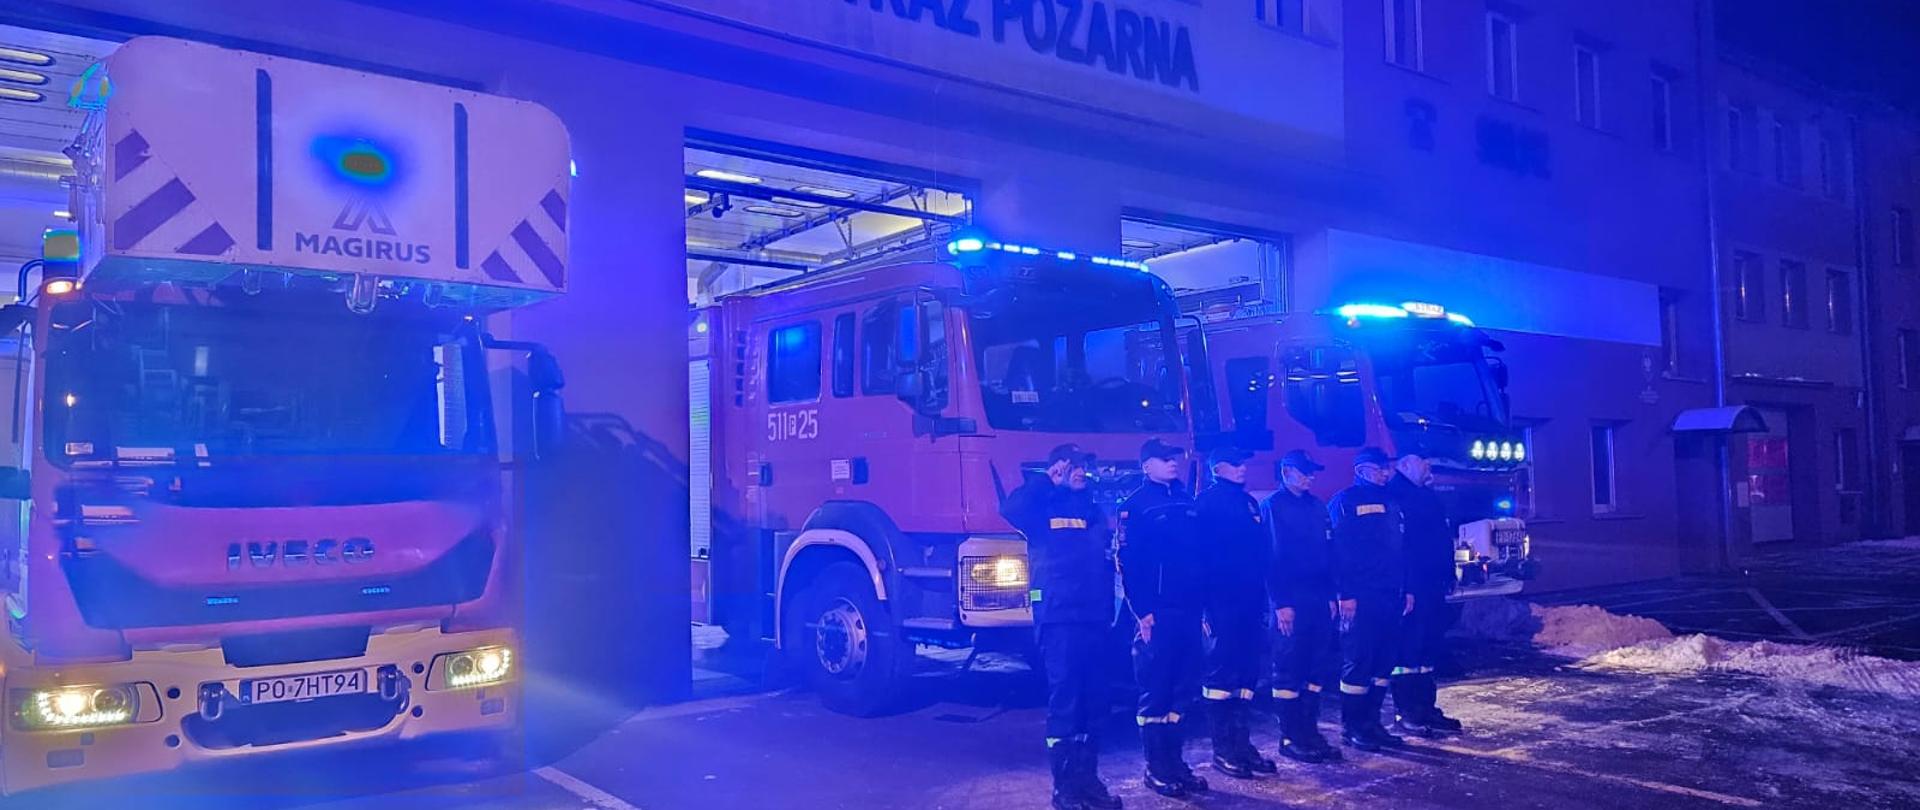 Sześciu strażaków stojących w szeregu na tle samochodów bojowych z włączonymi światłami alarmowymi.